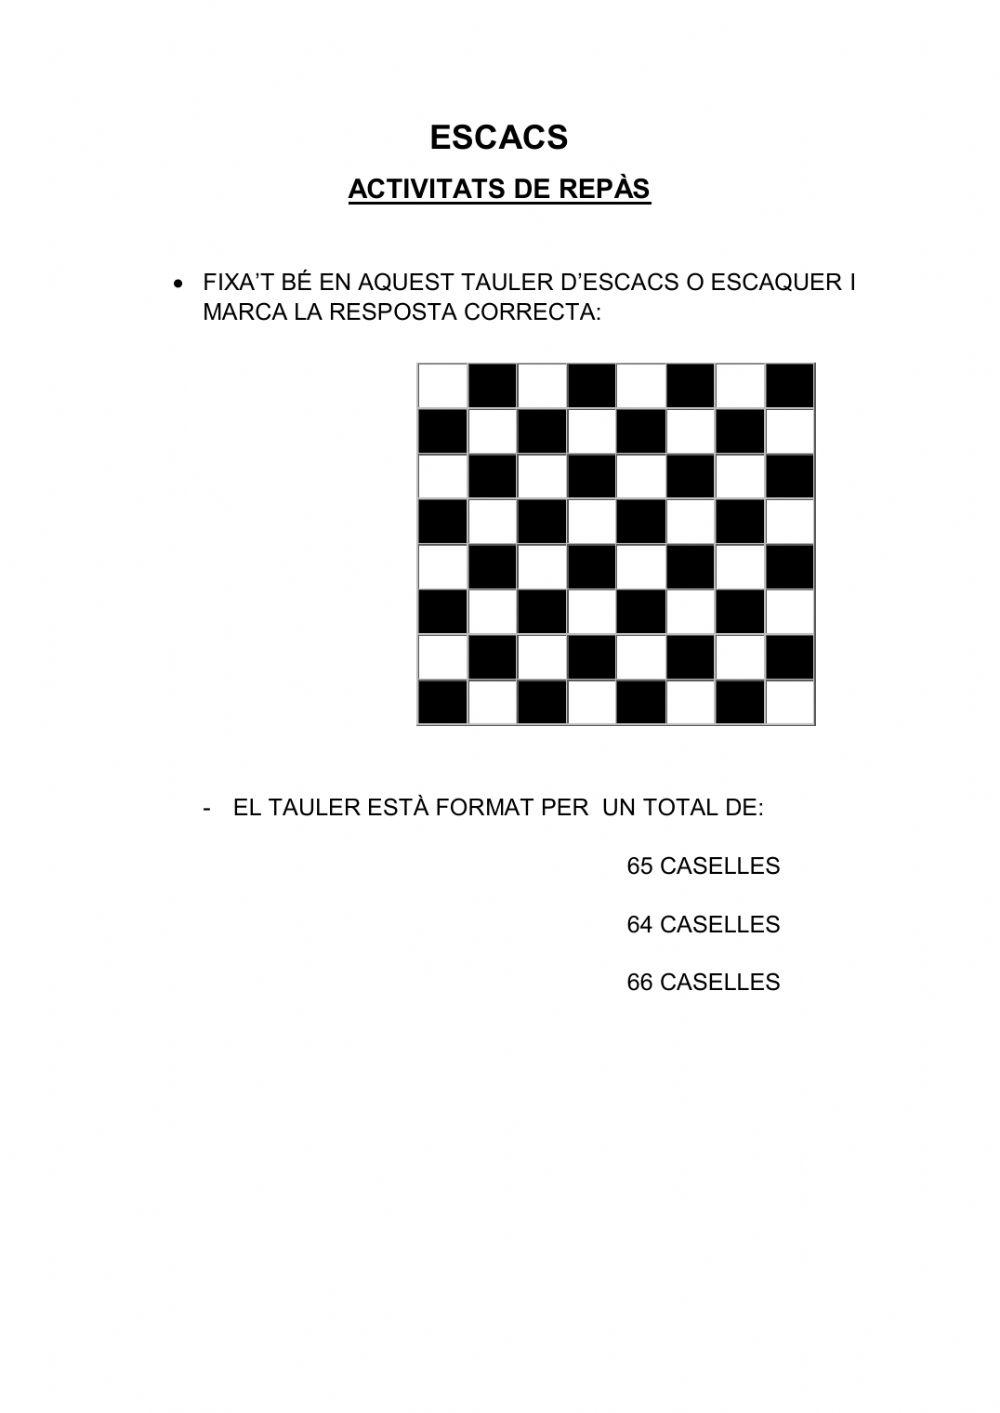 El tauler d'escacs o escaquer.